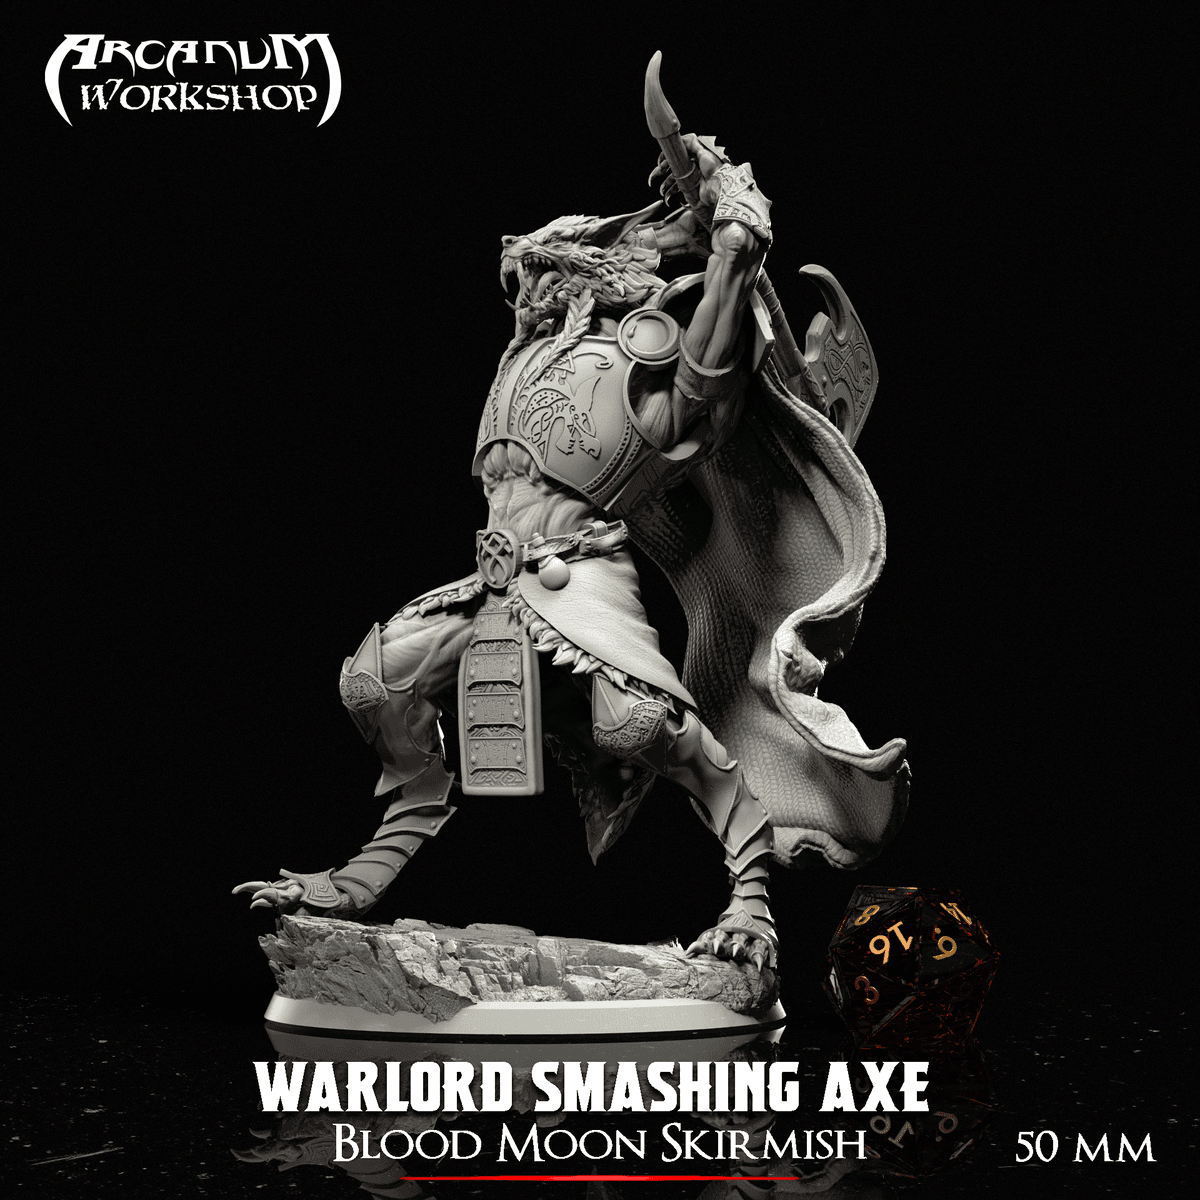 Square-Warlord smashing axe.png